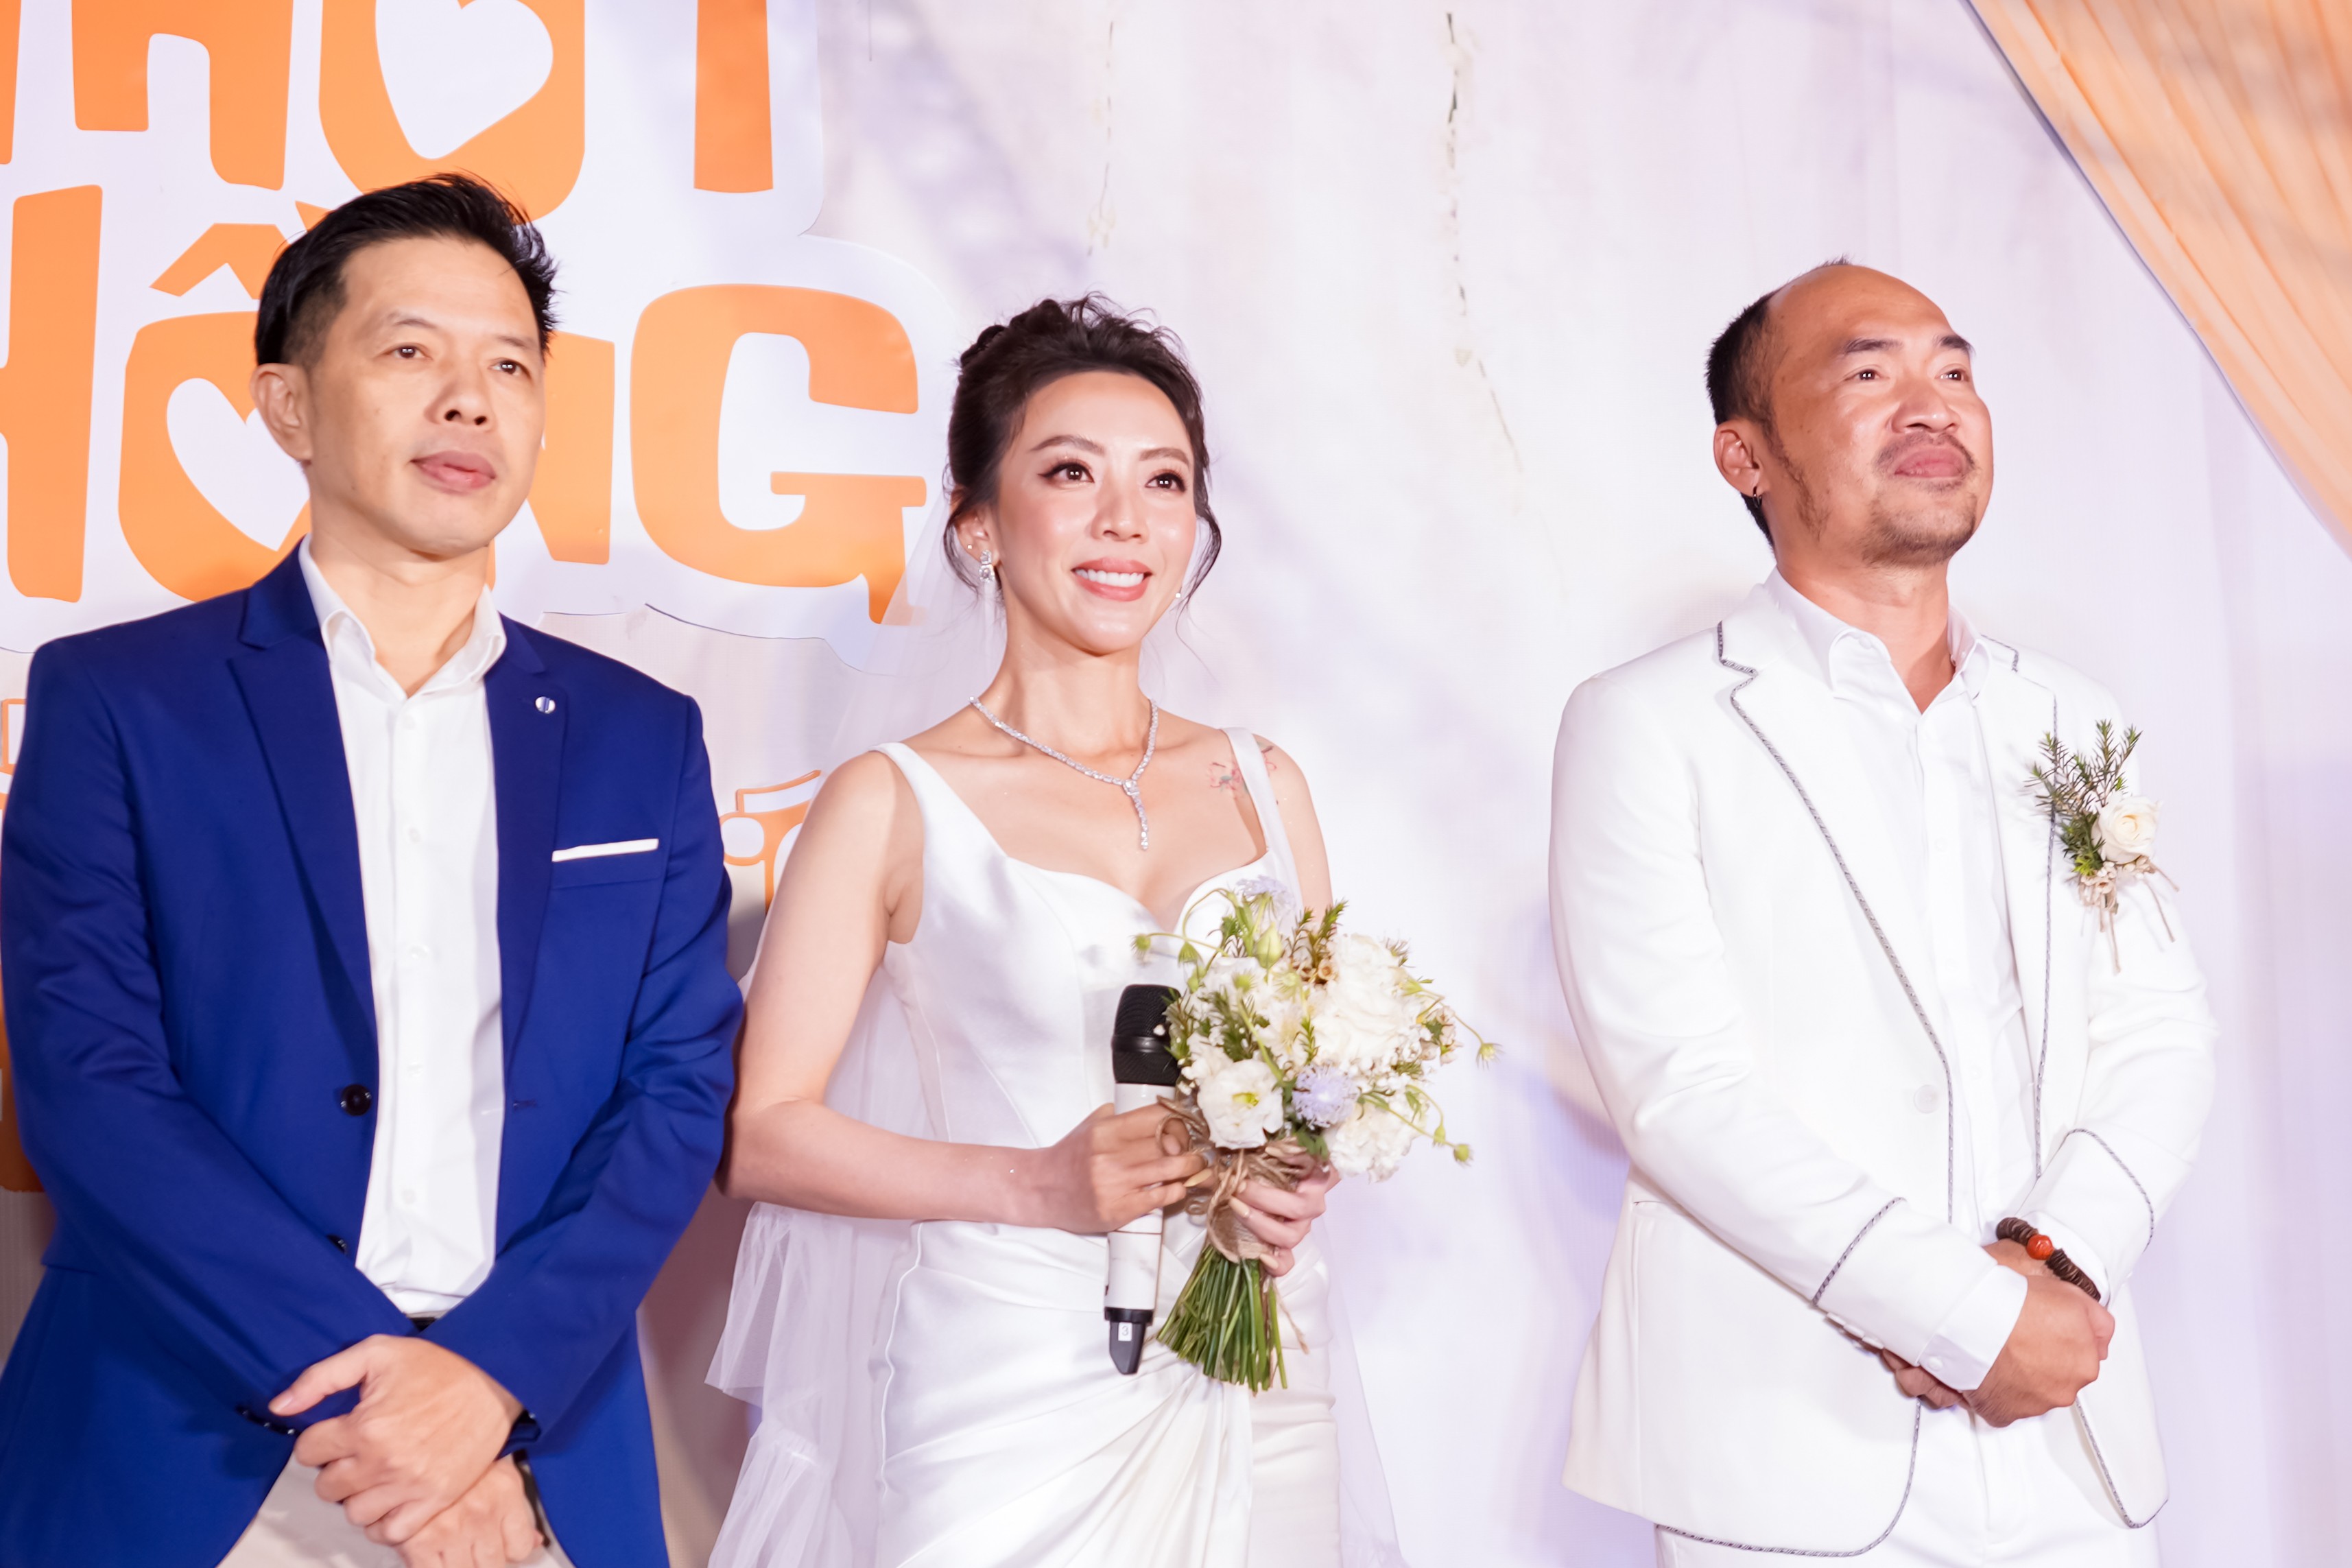 Thu Trang - Tiến Luật tái hiện đám cưới nhưng xúc động nhất lại từ Thái Hoà